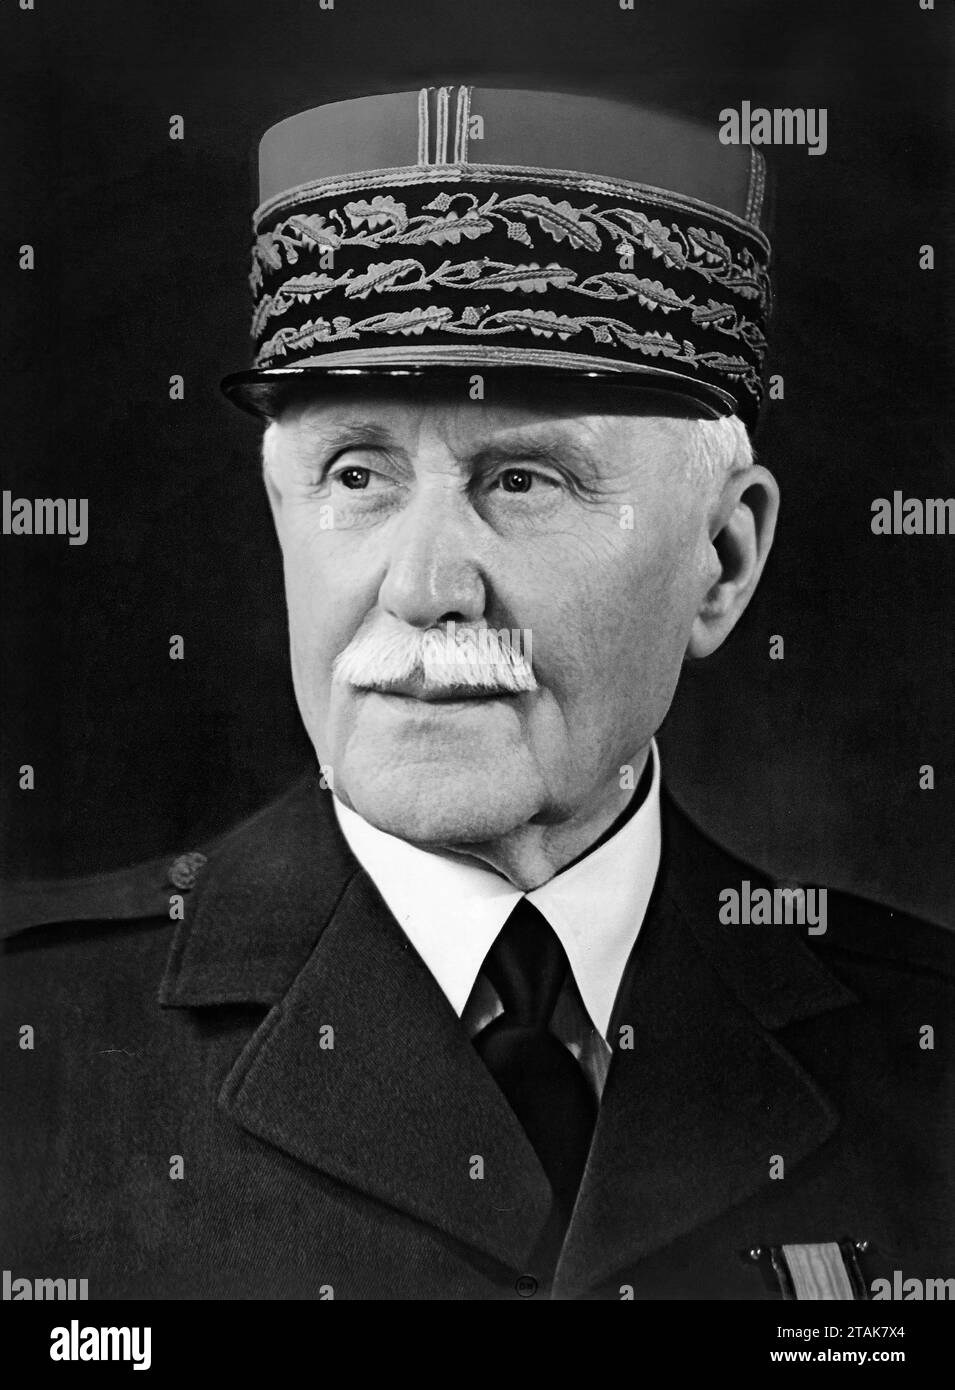 Philippe Pétain. Portrait du chef du régime collaborationniste de Vichy, Henri Philippe Benoni Omer Pétain (maréchal Pétain : 1856-1951), portrait officiel, c. 1941 Banque D'Images